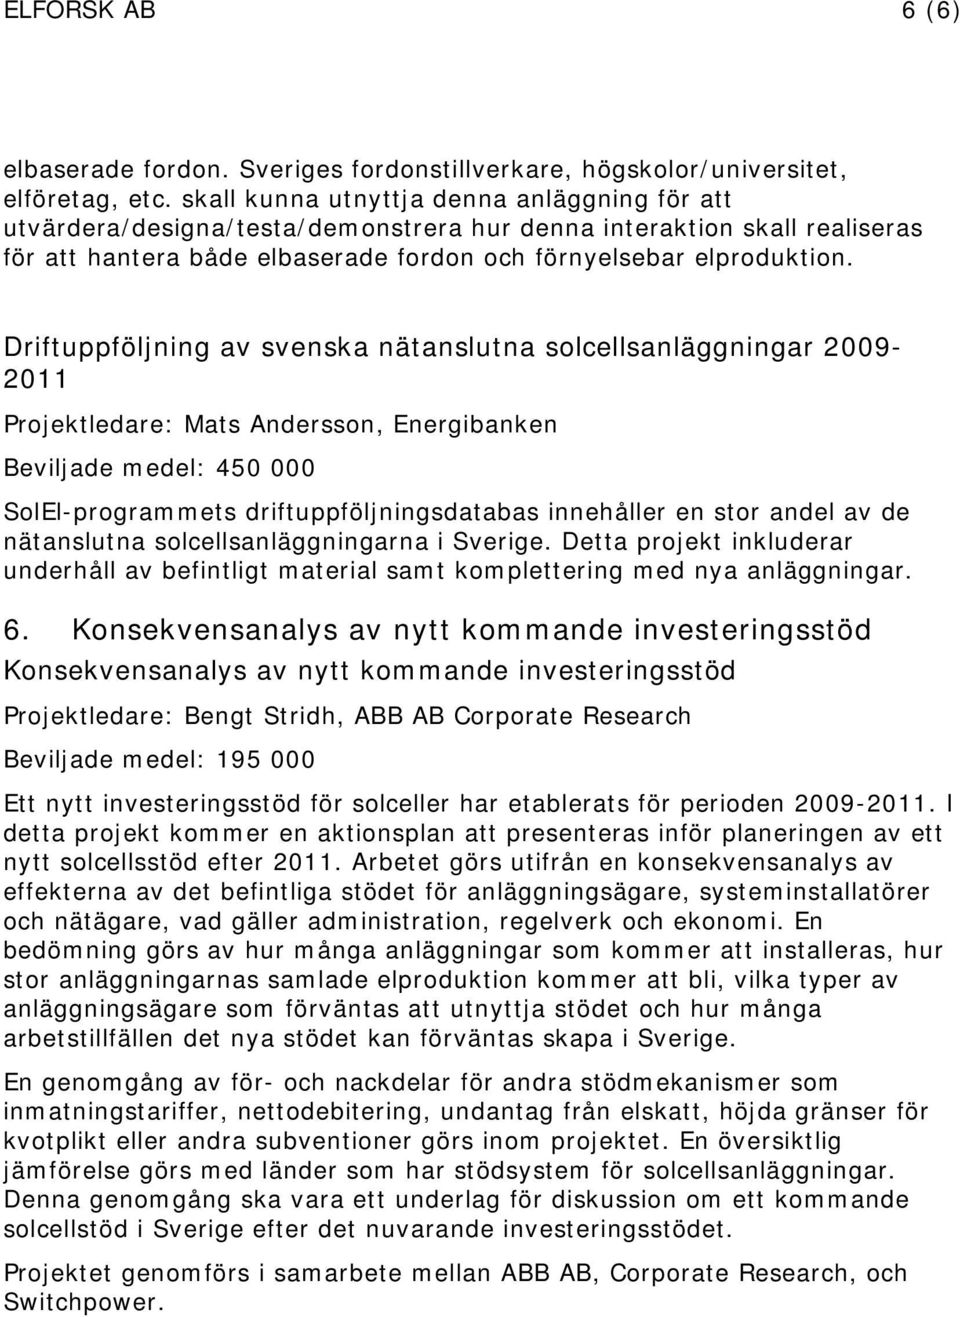 Driftuppföljning av svenska nätanslutna solcellsanläggningar 2009-2011 Projektledare: Mats Andersson, Energibanken Beviljade medel: 450 000 SolEl-programmets driftuppföljningsdatabas innehåller en